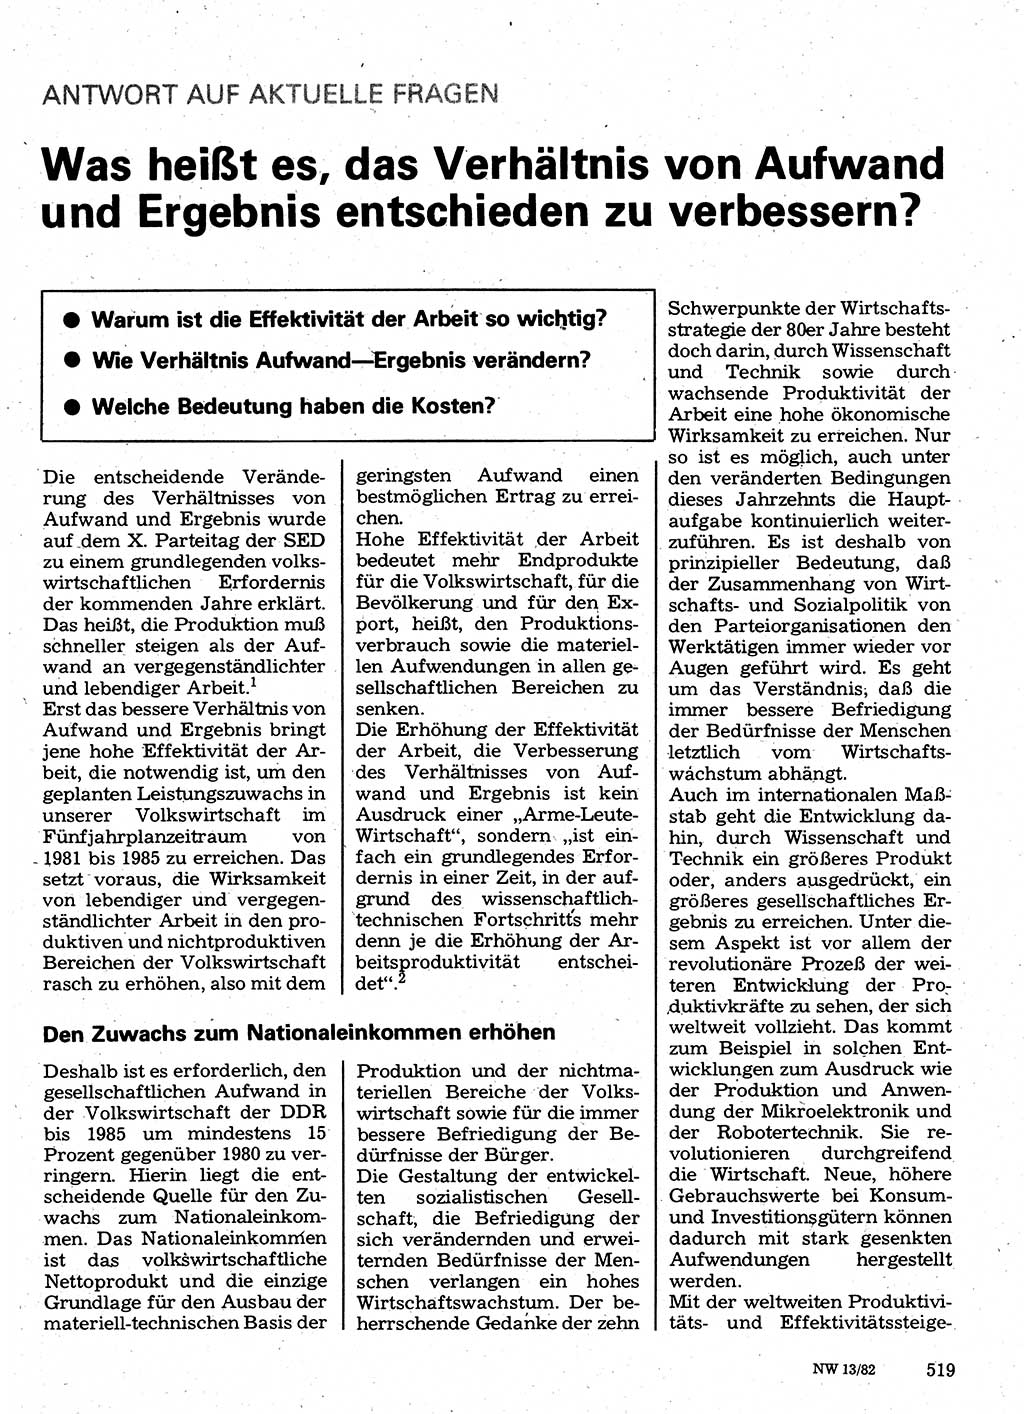 Neuer Weg (NW), Organ des Zentralkomitees (ZK) der SED (Sozialistische Einheitspartei Deutschlands) für Fragen des Parteilebens, 37. Jahrgang [Deutsche Demokratische Republik (DDR)] 1982, Seite 519 (NW ZK SED DDR 1982, S. 519)